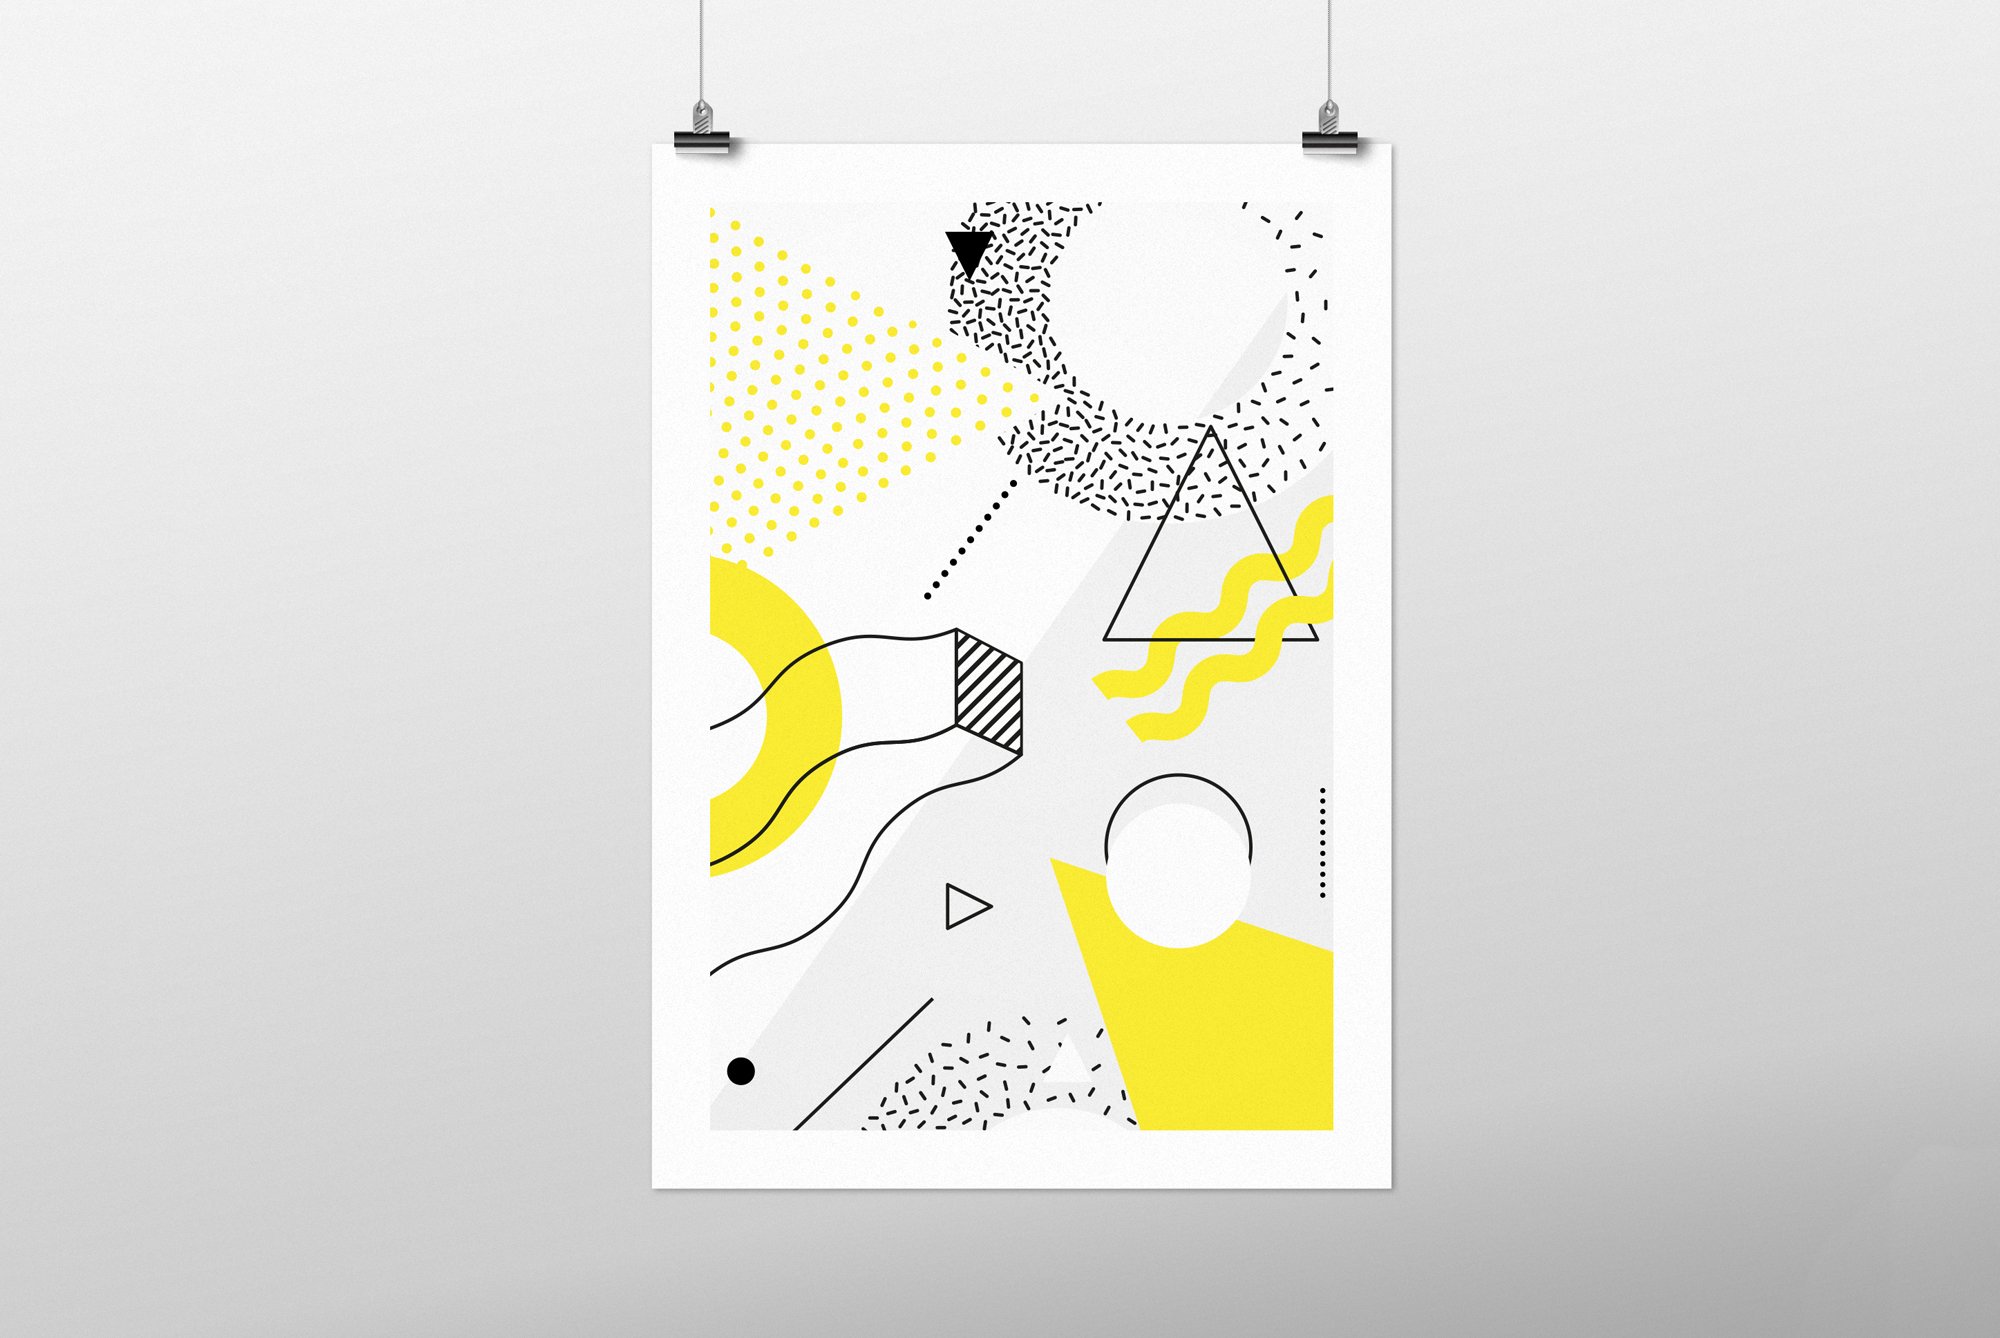 863 极简设计的抽象图形矢量元素和海报模板 60 geometric shapes 30 posters